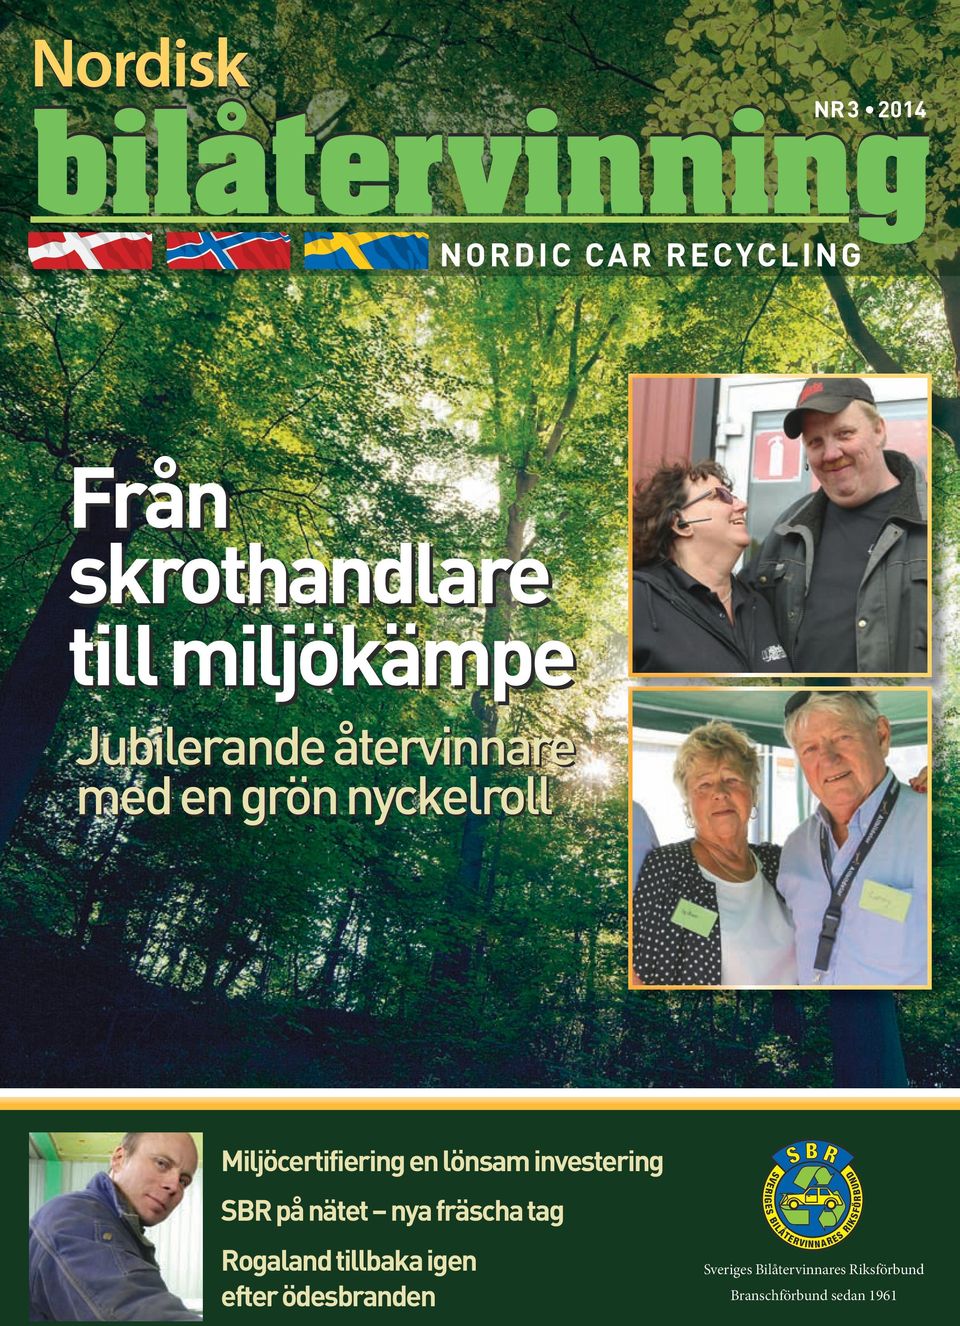 igen efter ödesbranden Sveriges Bilåtervinnares Riksförbund Branschförbund sedan 1961 Blå= PMS 286 Blå=